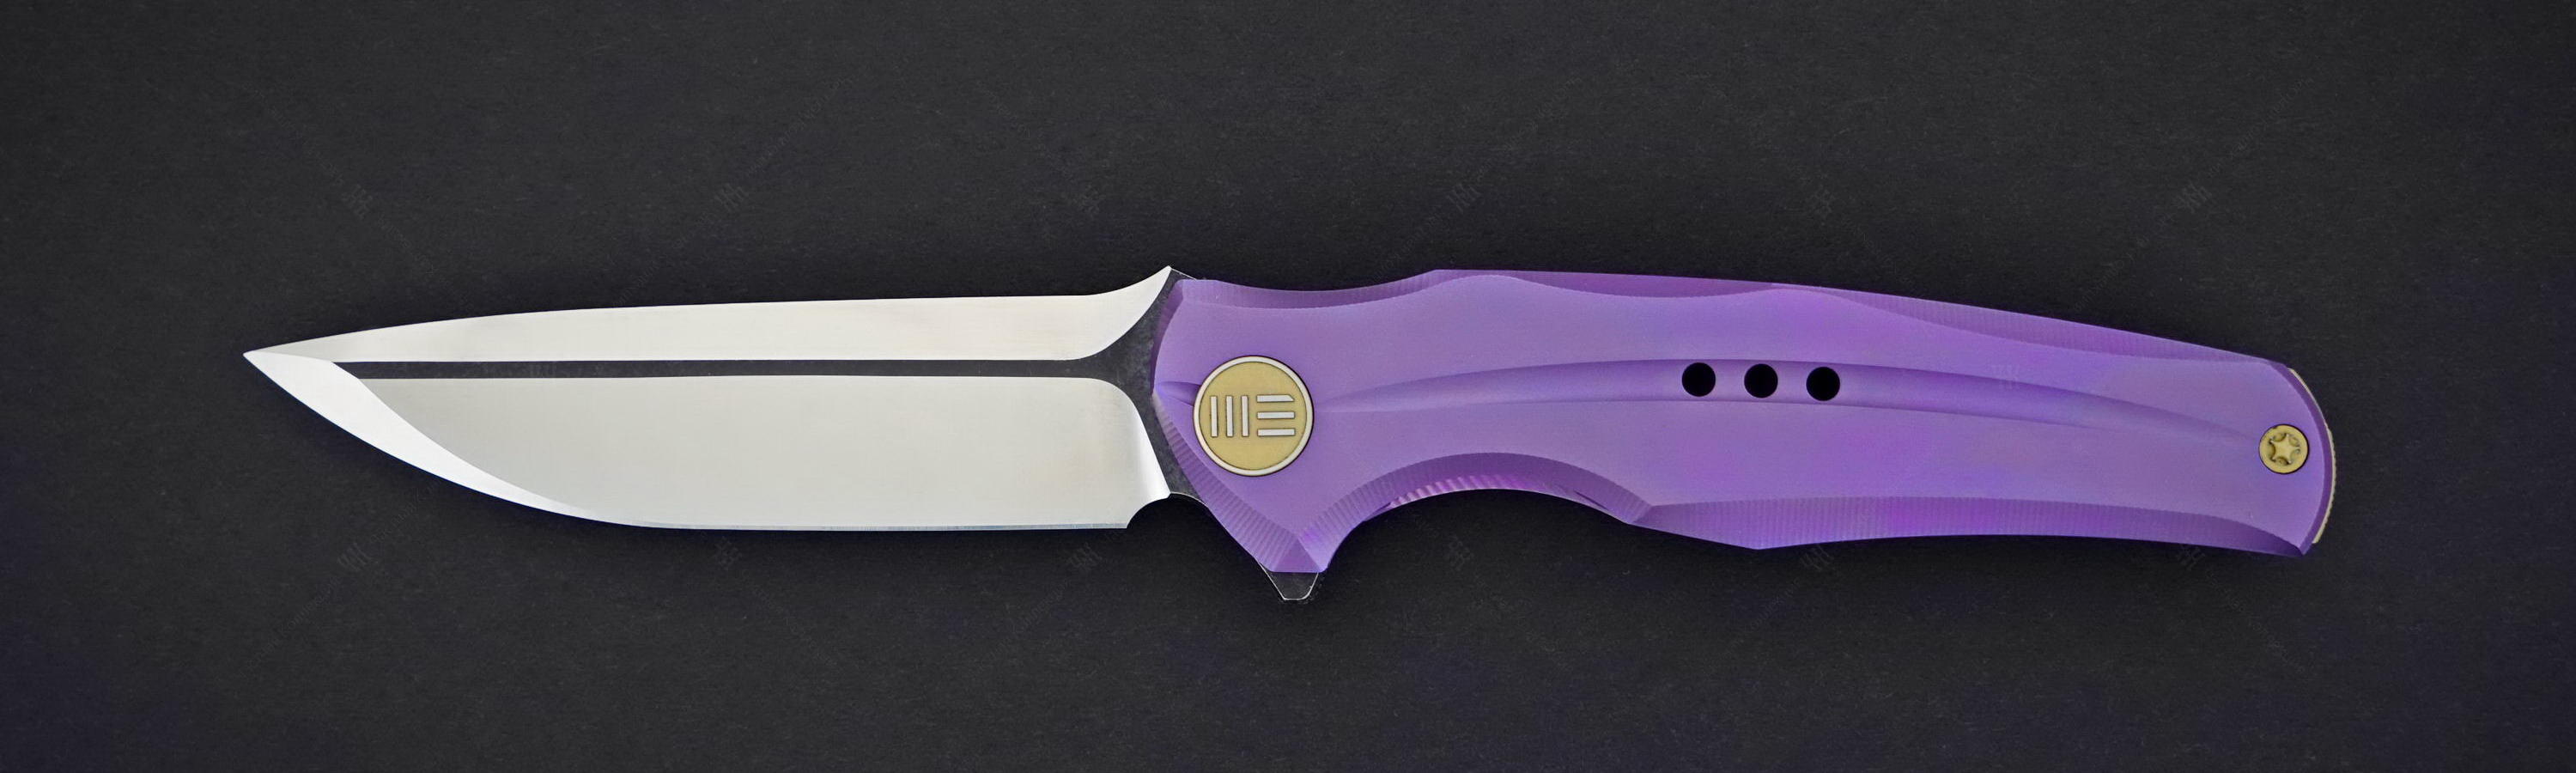 We Knife Model 601 Purple